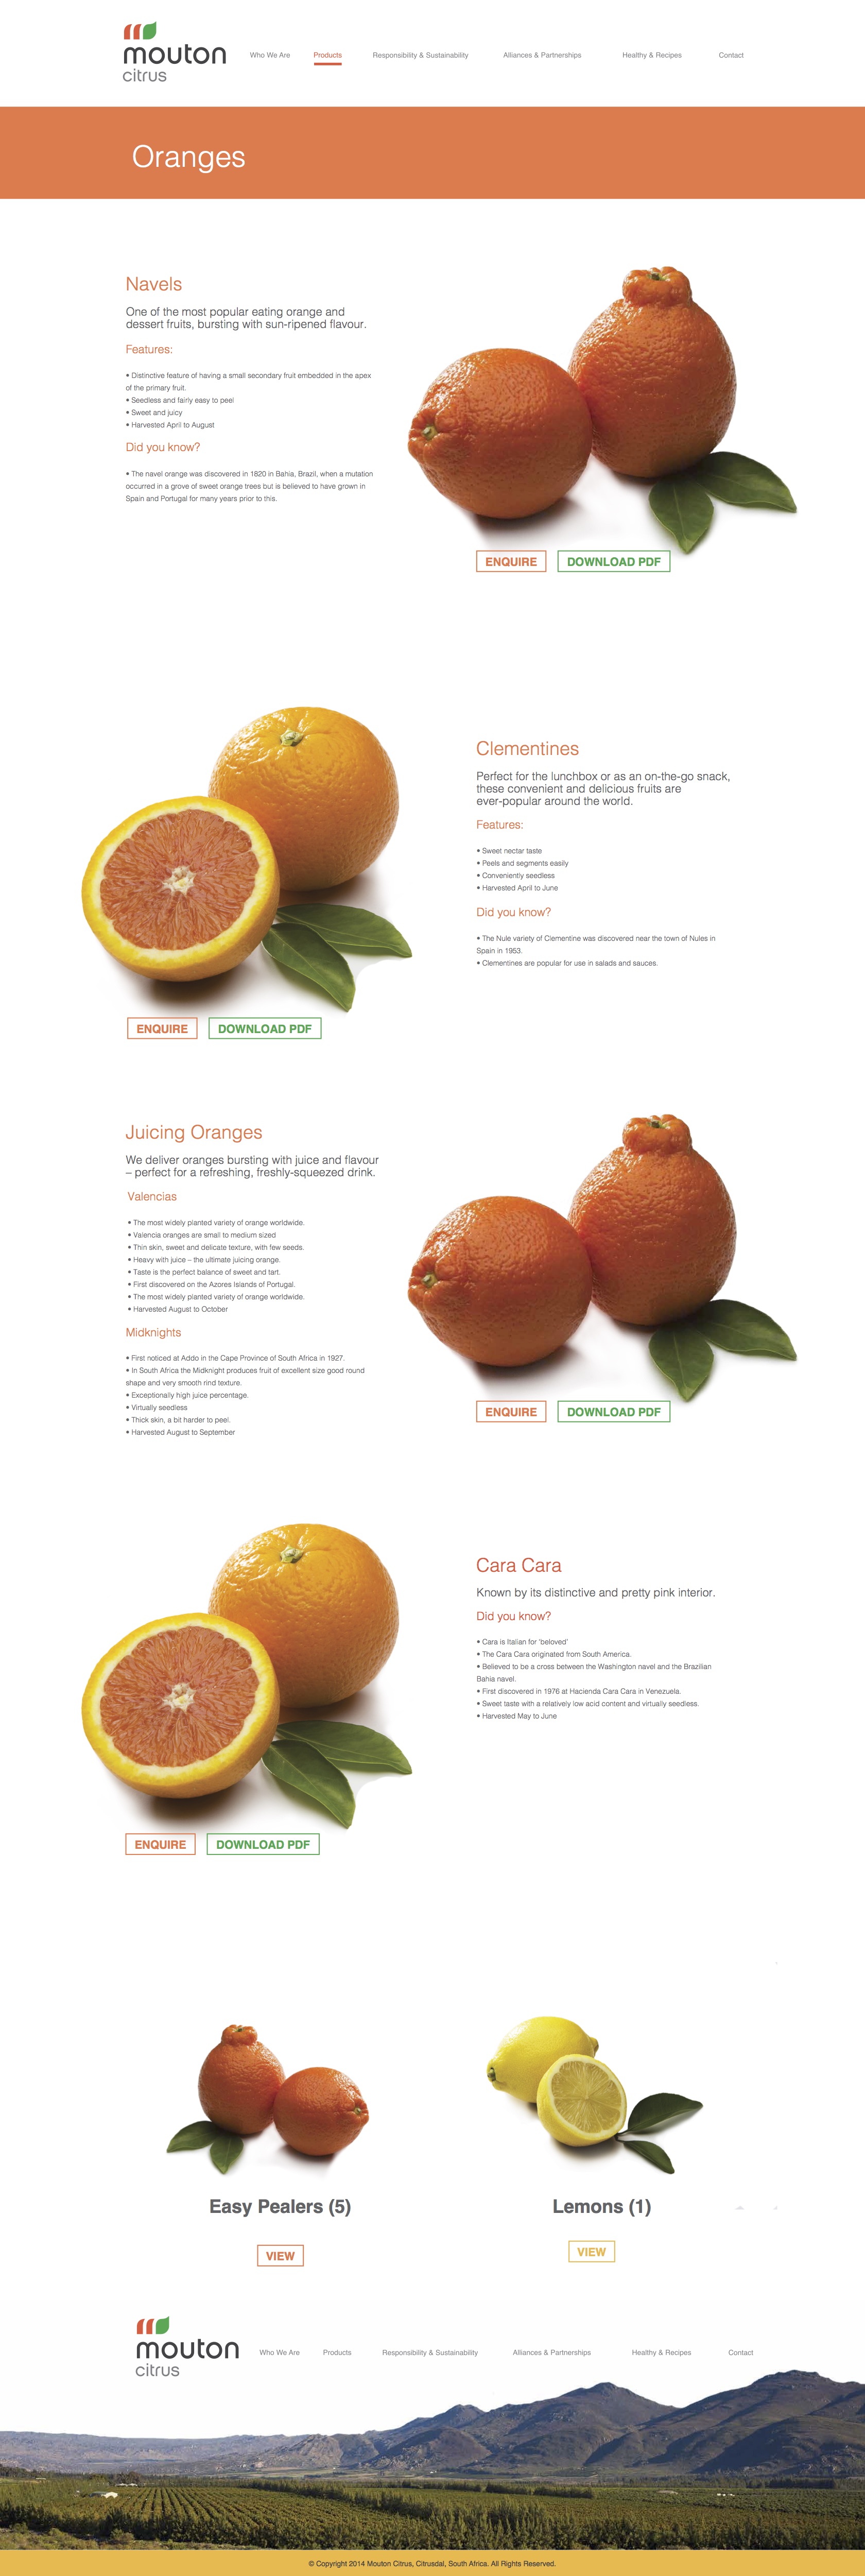 Mouton citrus, parallax, web design, UI, UX, fruit, farm, product ...